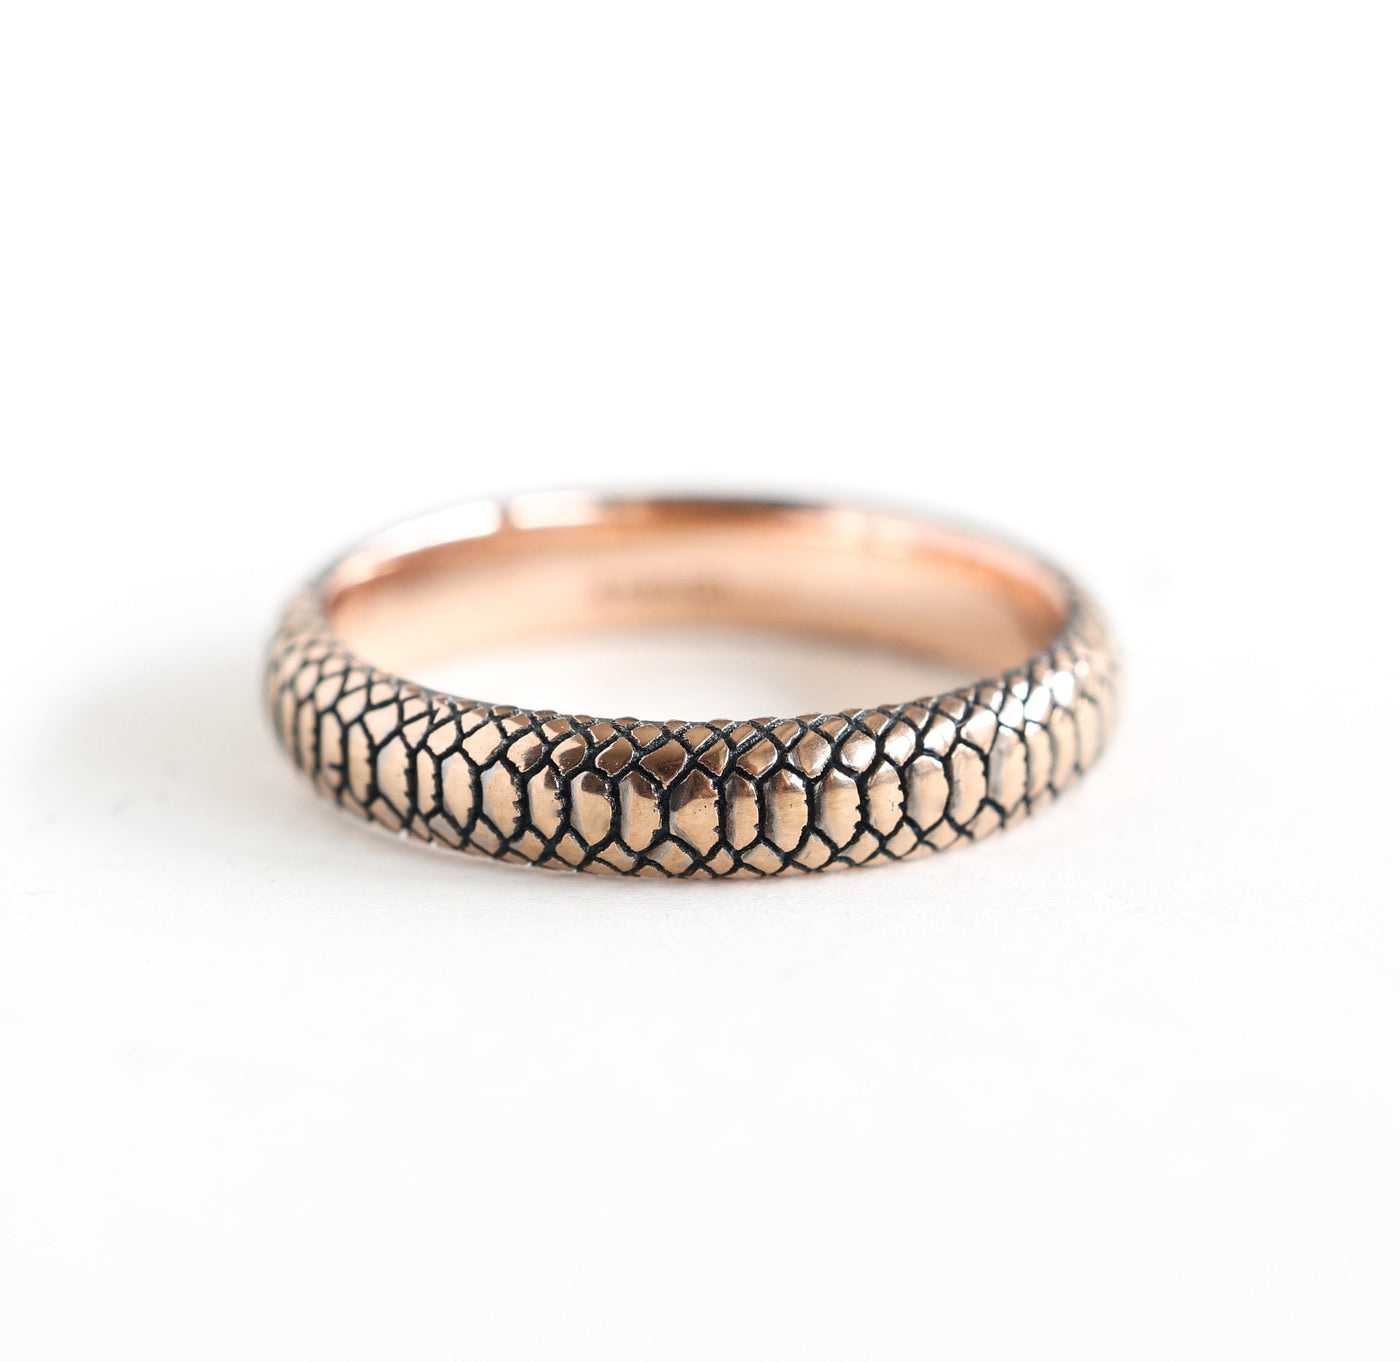 Gold snake band textured ring, showcasing intricate snake skin pattern in 14k gold.